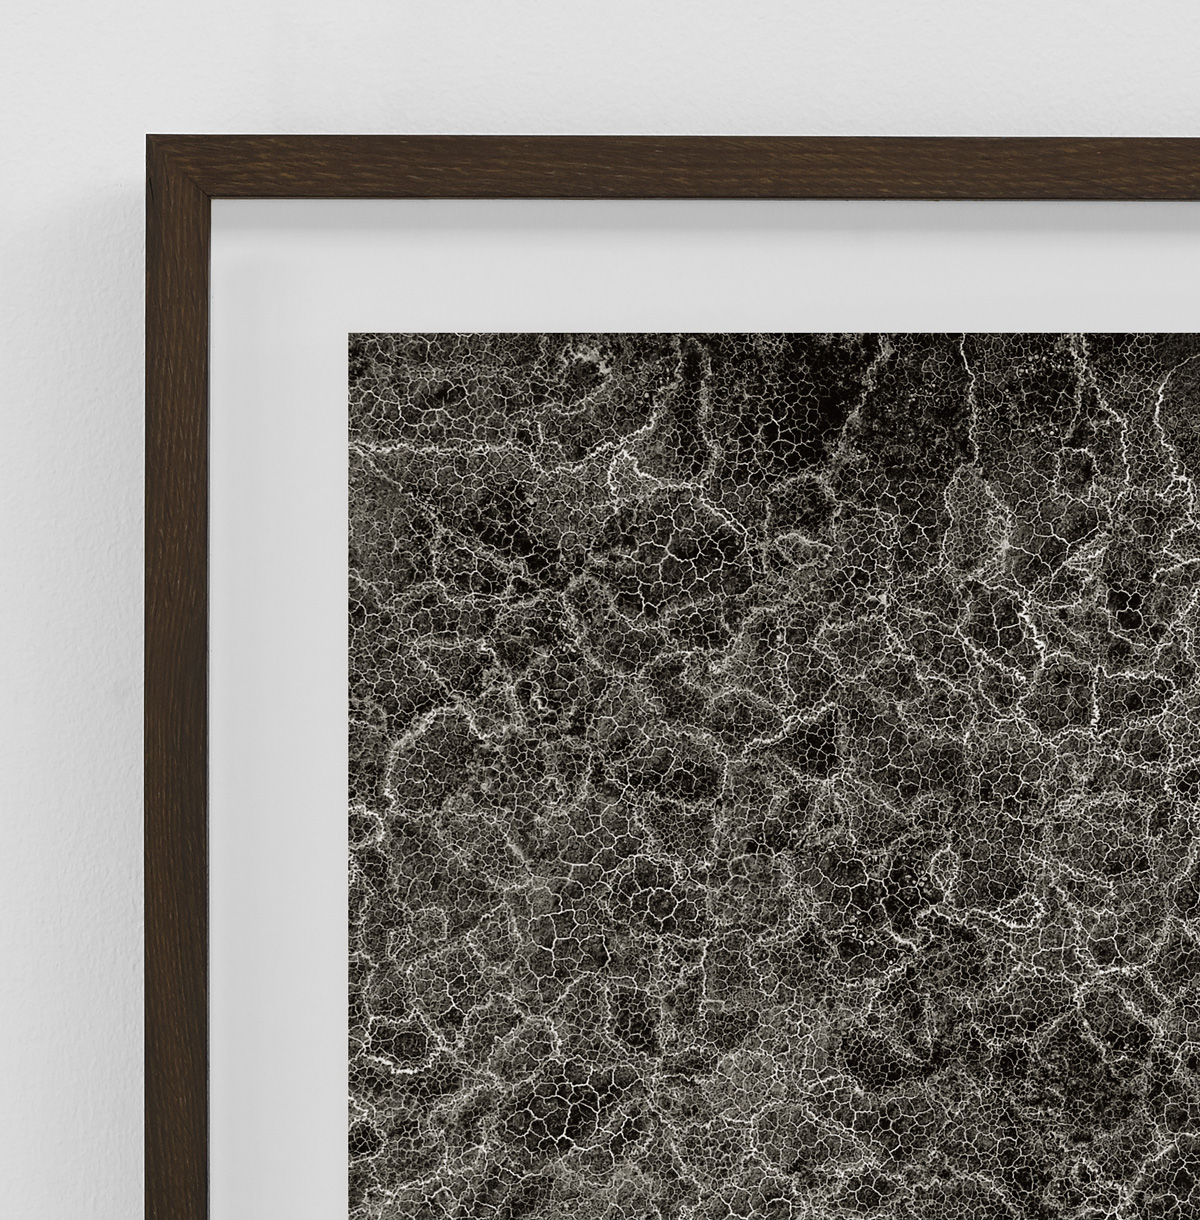 Detalje af indrammet kunstfotografi mønster i hvid og 3 varme grå farver fra serien Satellites af fotograf Kenneth Rimm